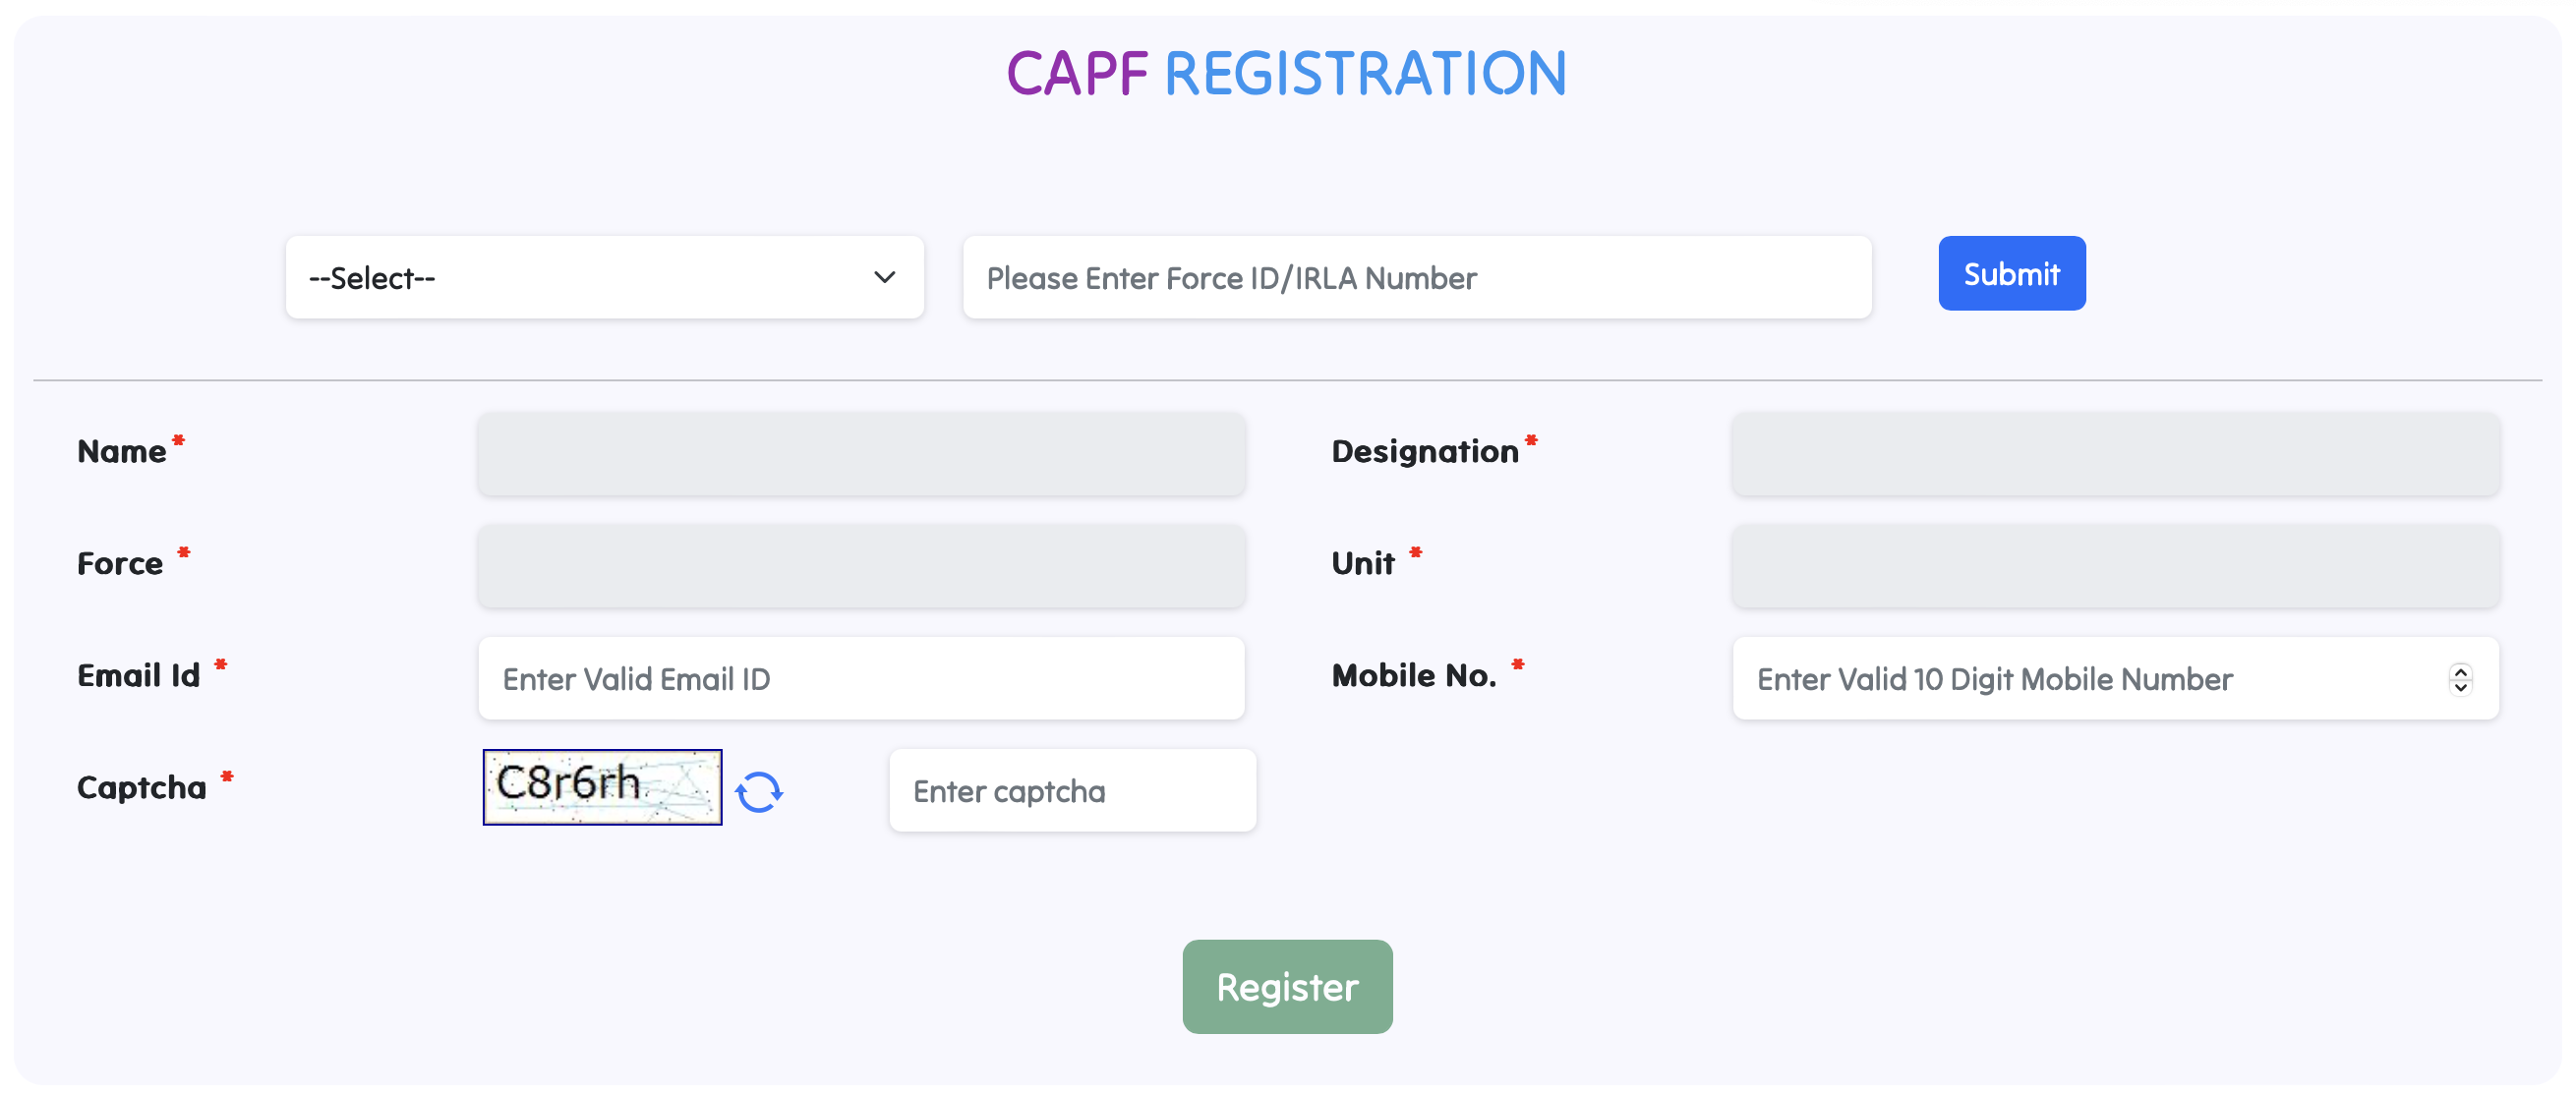 Capf E-Awas Registration